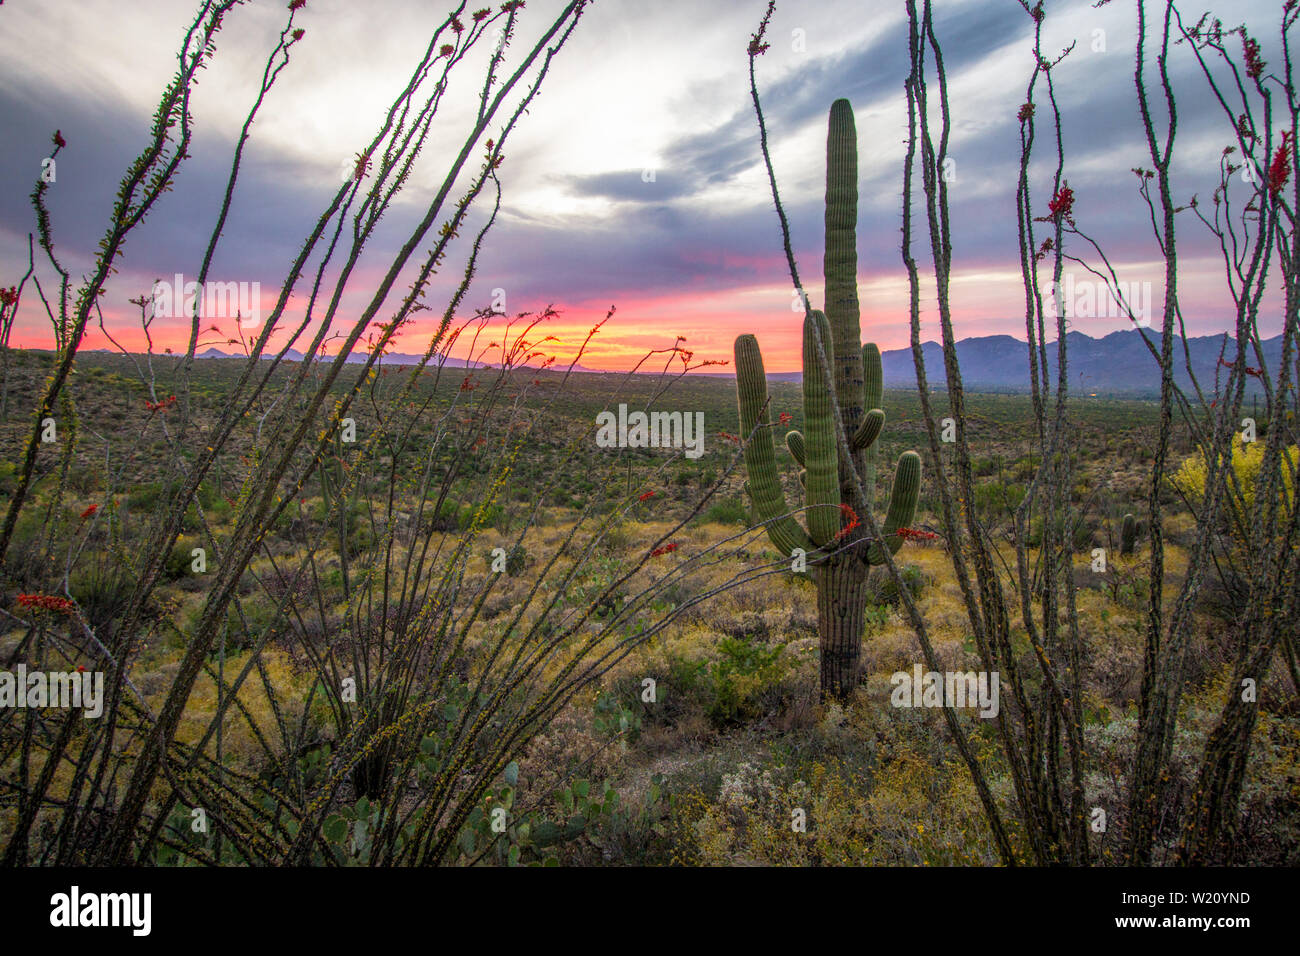 Paysage de Tucson Arizona Sunset. Cactus Saguaro, la corolle et le cactus Ocotillo dans le désert de Sonora au parc national de Saguaro à Tucson, Arizona Banque D'Images